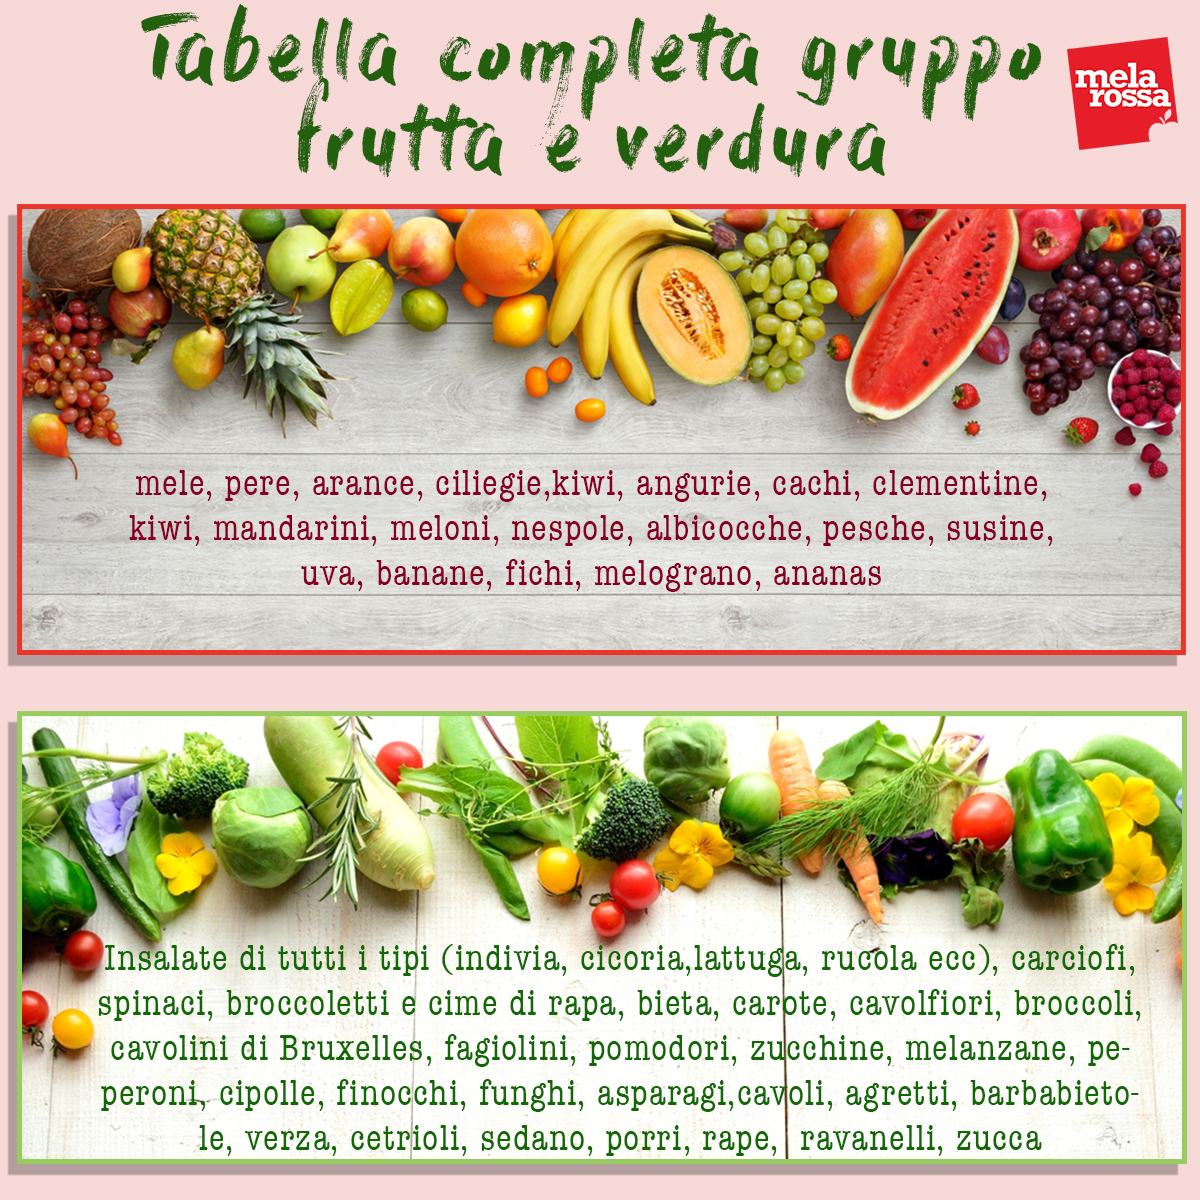 Tabella completa gruppo frutta e verdura